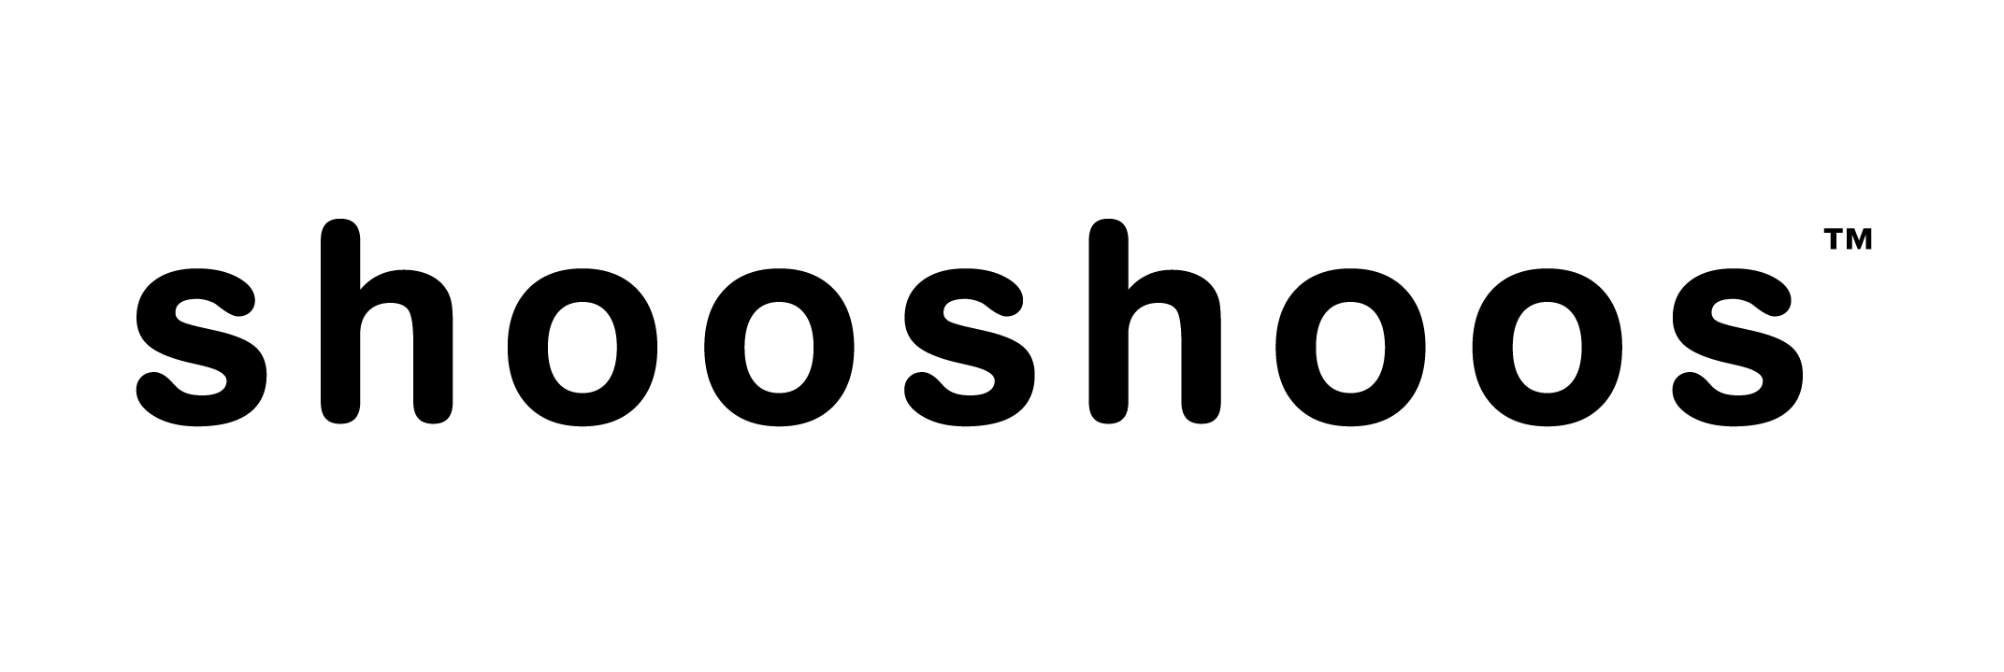 shooshoos